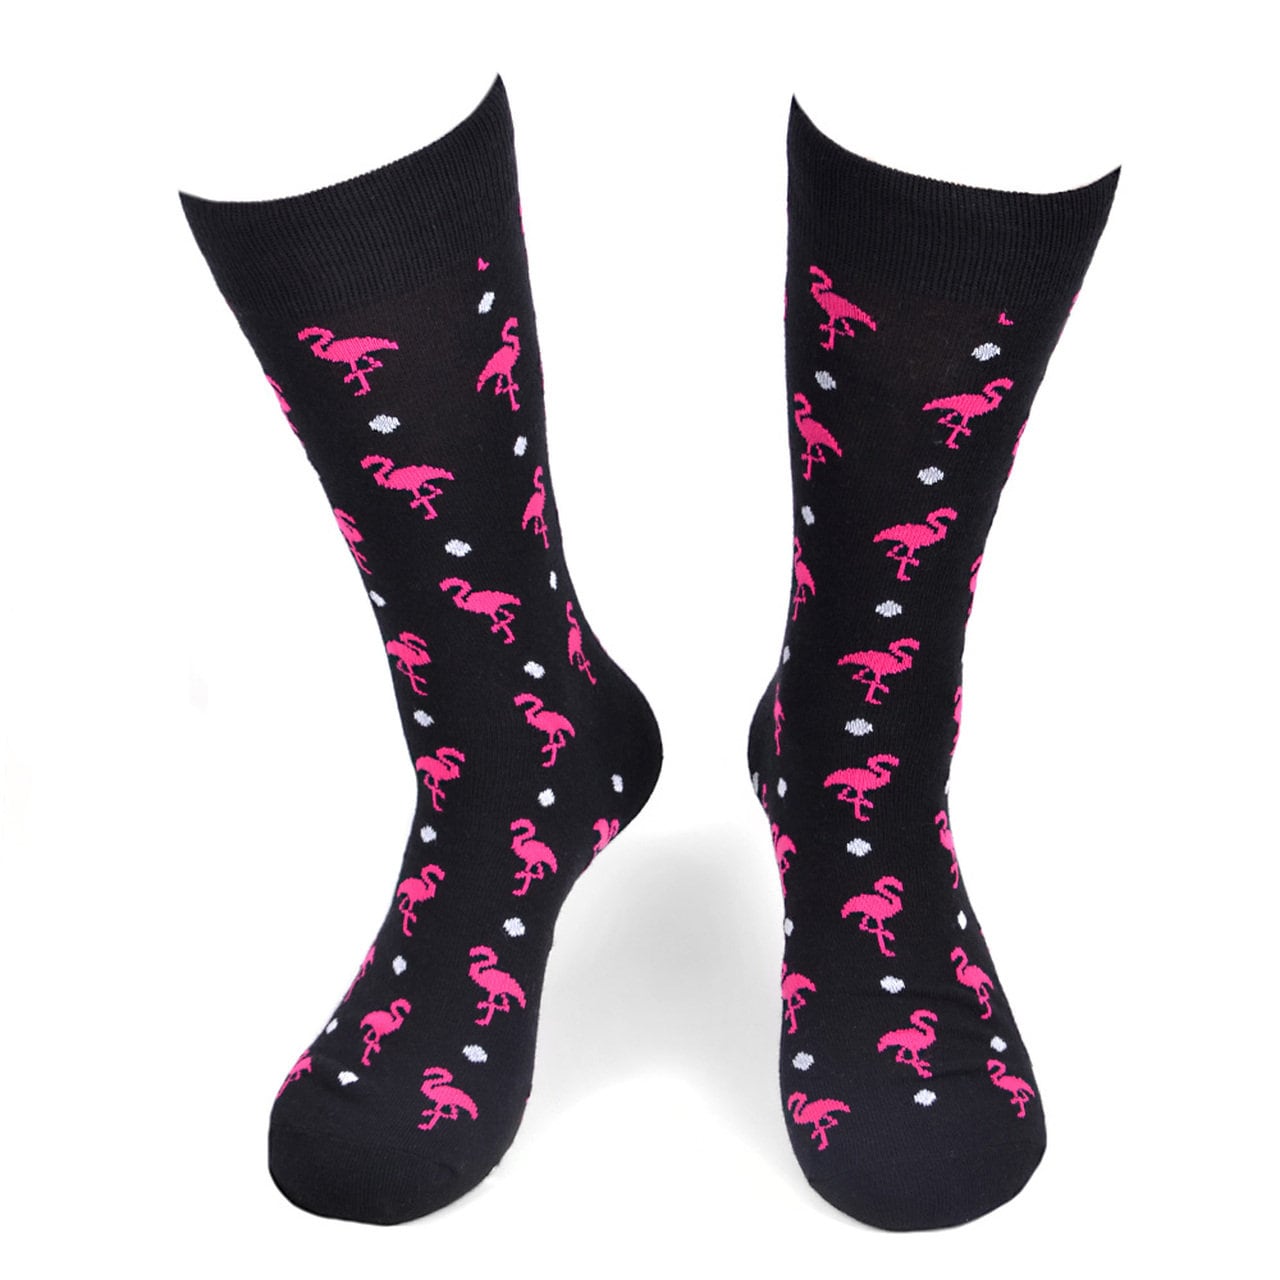 Fun Men's Flamingos Novelty Socks Black With - Etsy